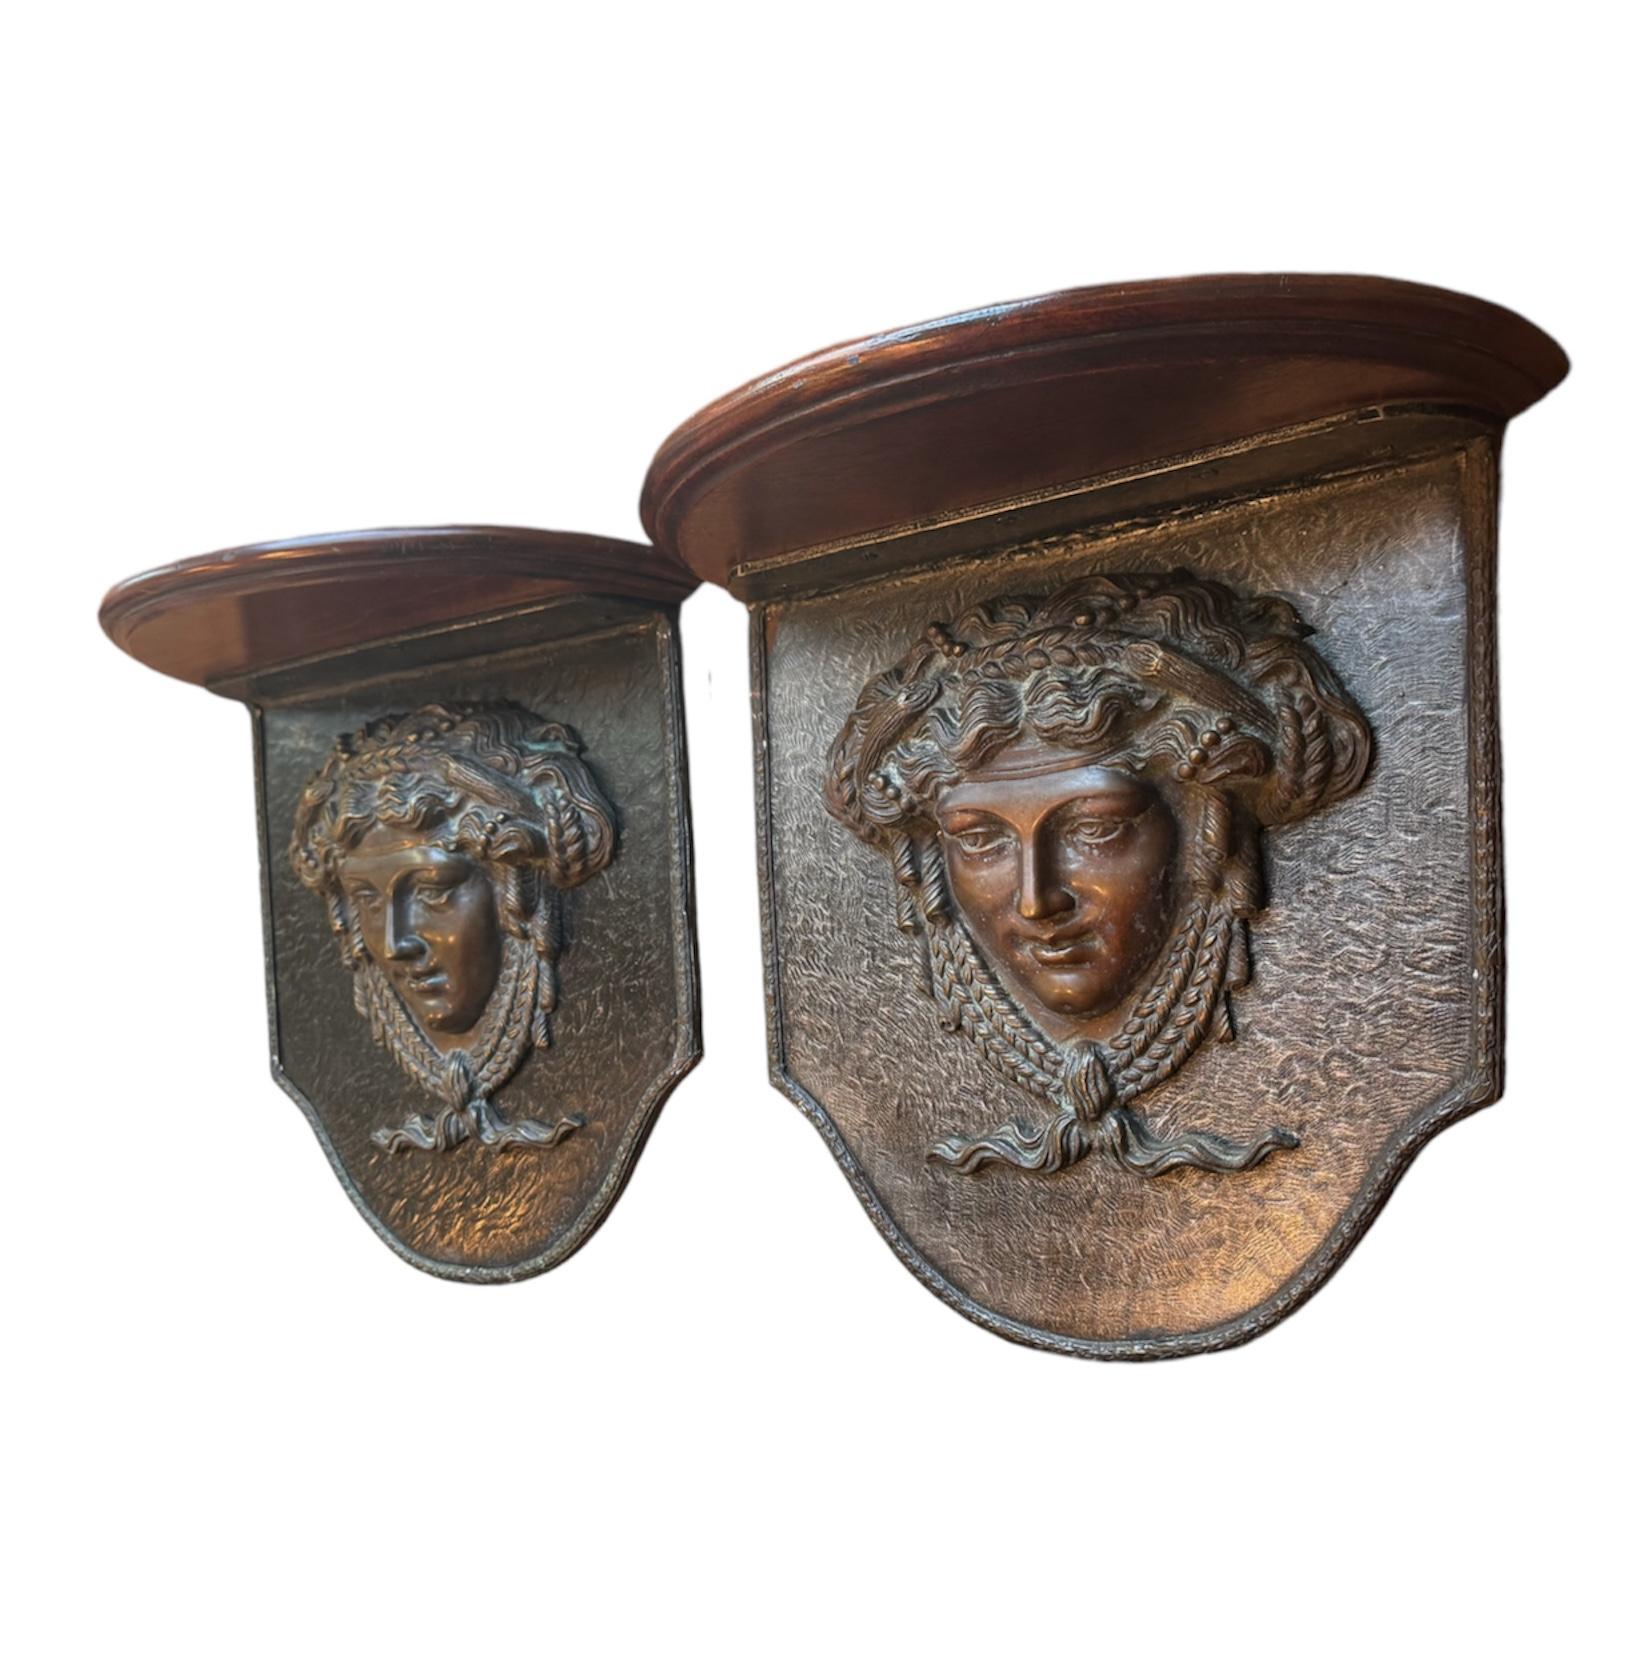 Voici une paire de corbeaux muraux exquis de style Versace, une incarnation du luxe et de la beauté classique conçue pour rehausser l'esthétique de n'importe quelle pièce. Ces pièces rares présentent des têtes de Méduse en bronze massif, une marque